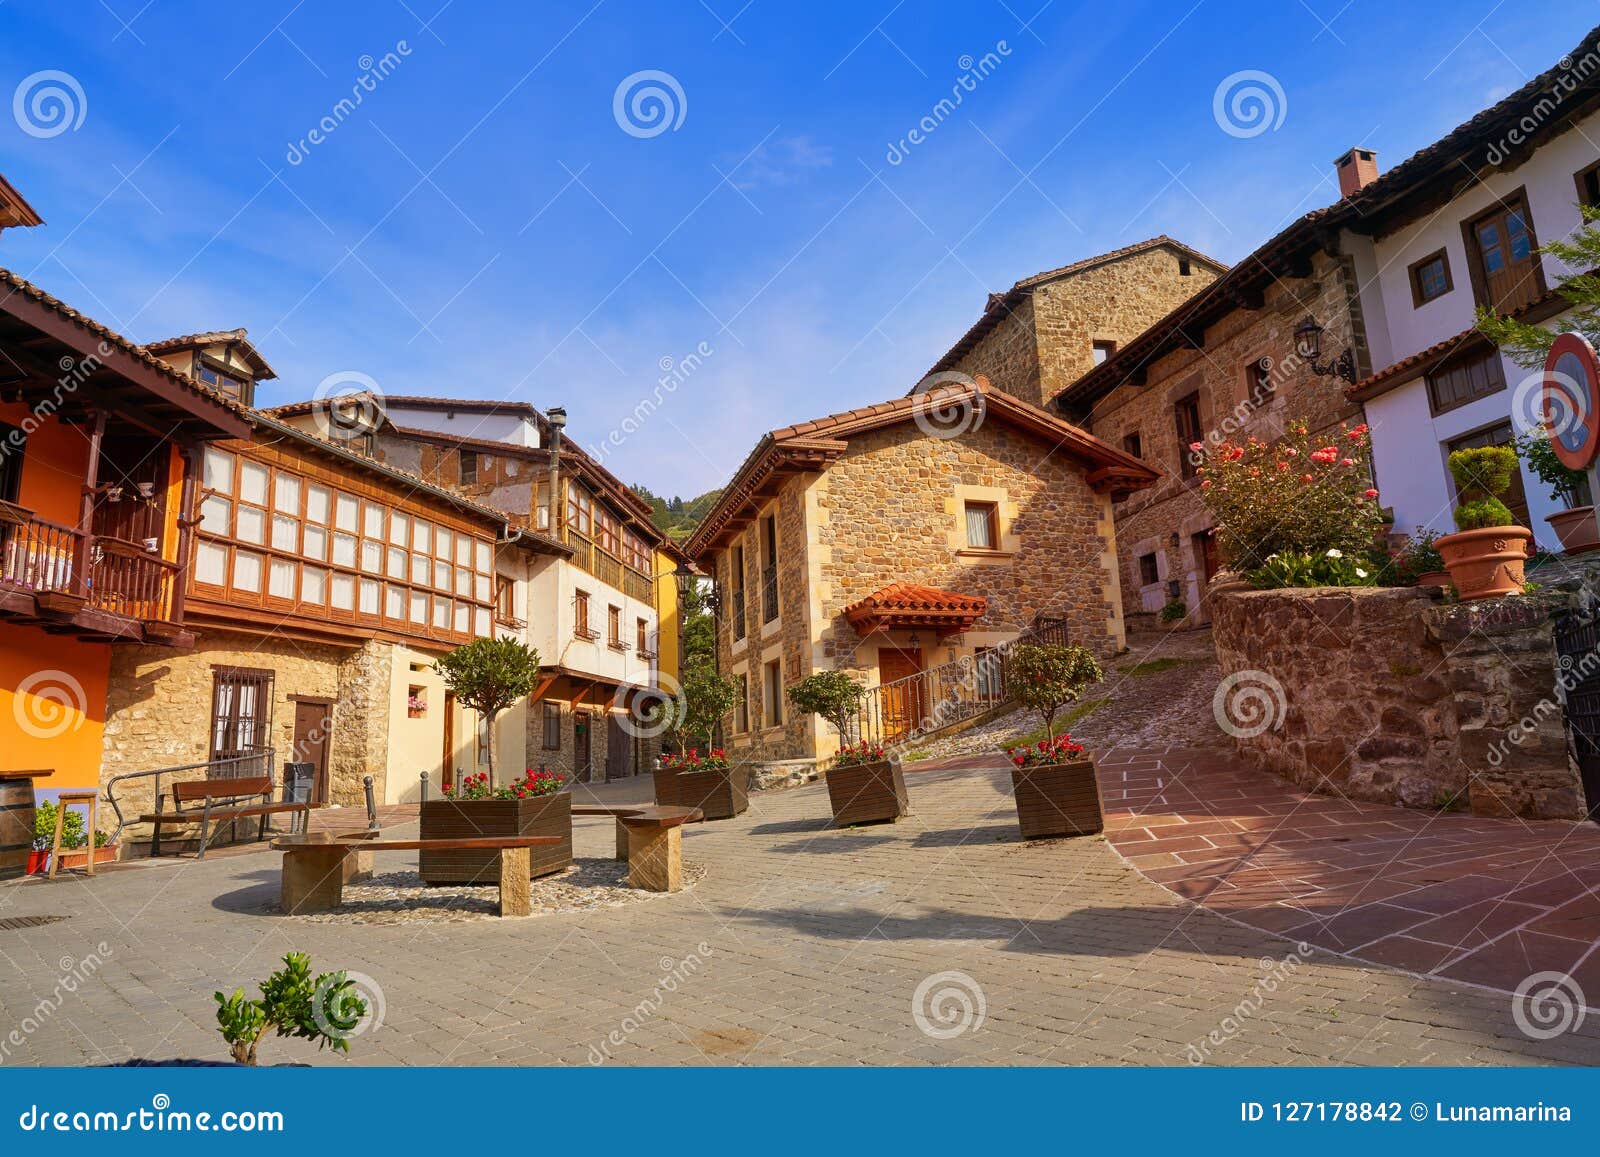 potes village facades in cantabria spain